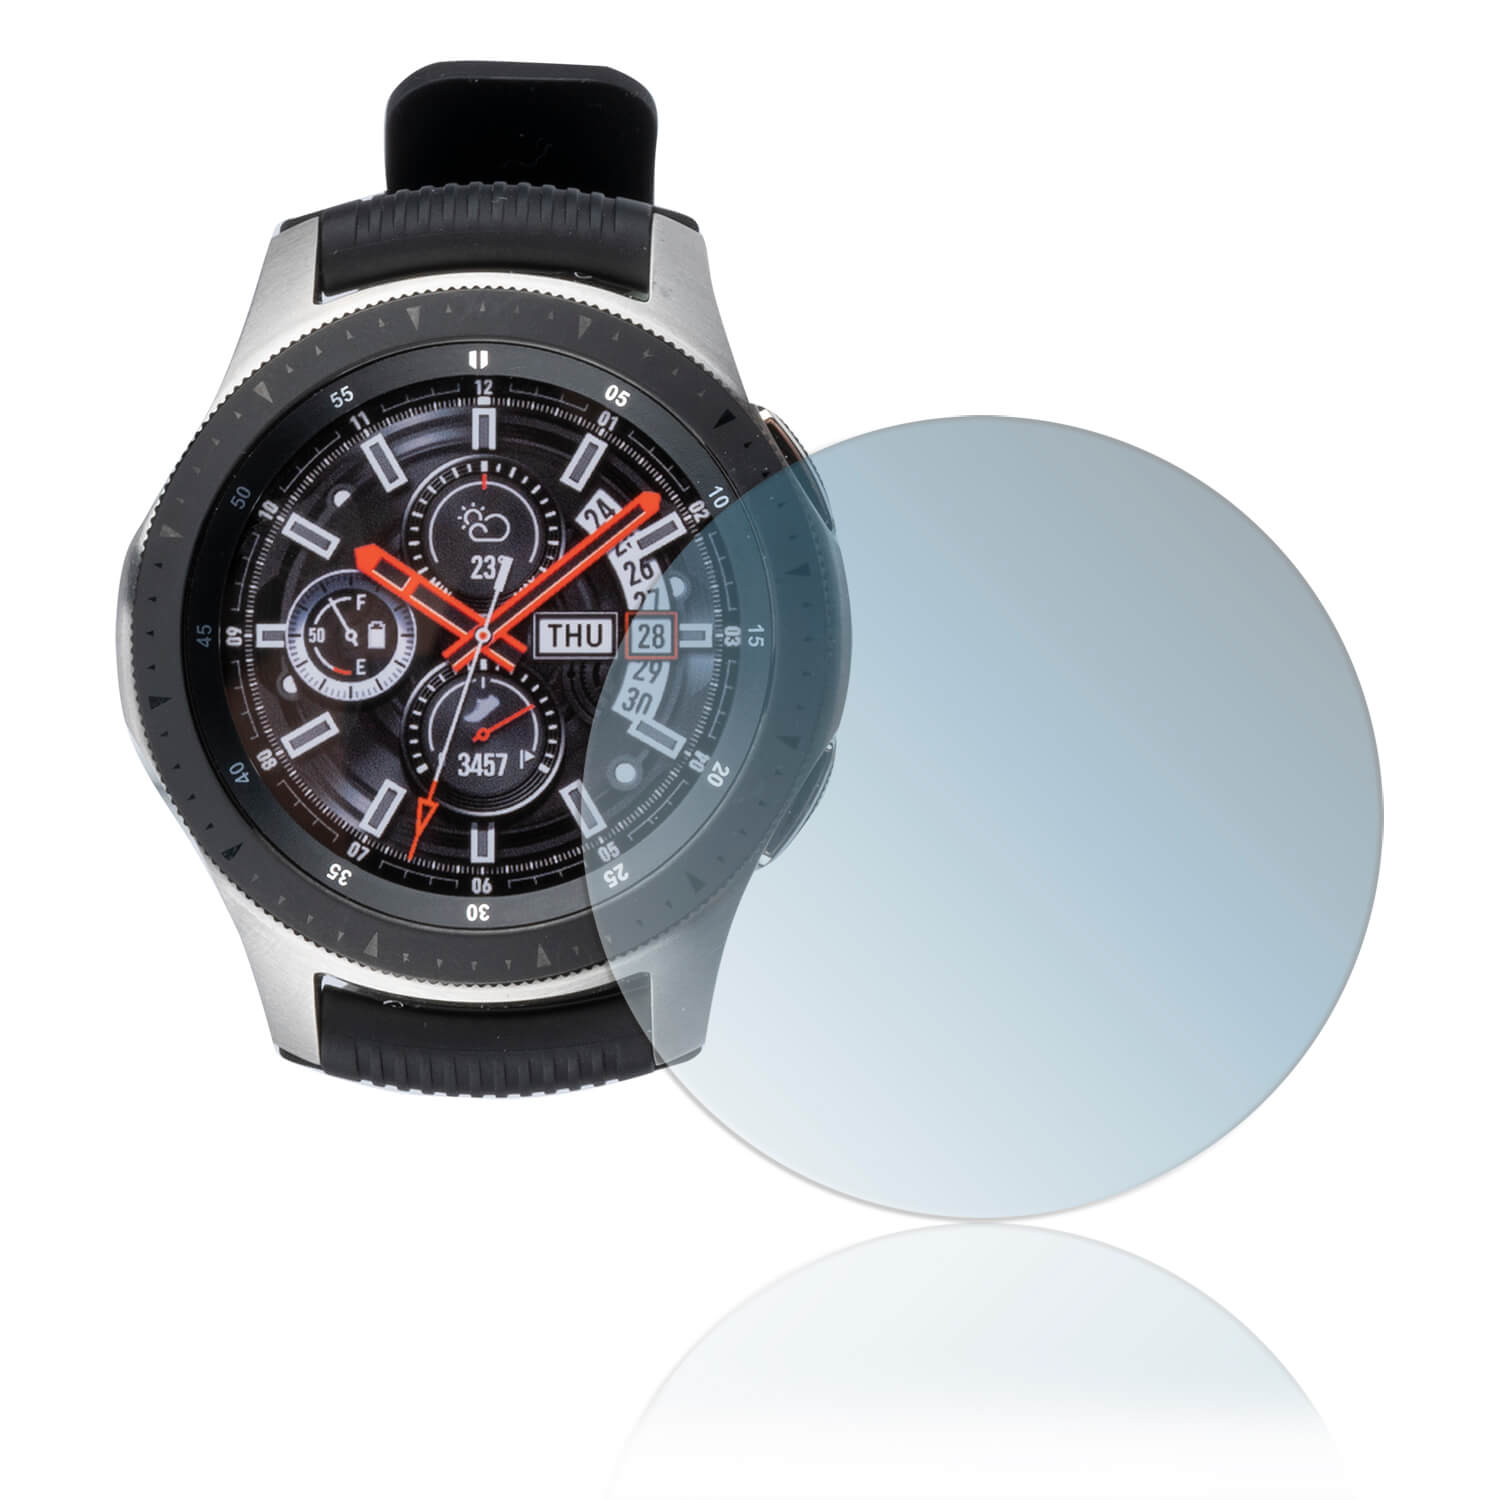 Защитное стекло на Samsung watch 46mm. Samsung watch 46mm стекло. Защитное стекло на самсунг вотч 4. Samsung Galaxy watch стекло. Стекло для samsung watch